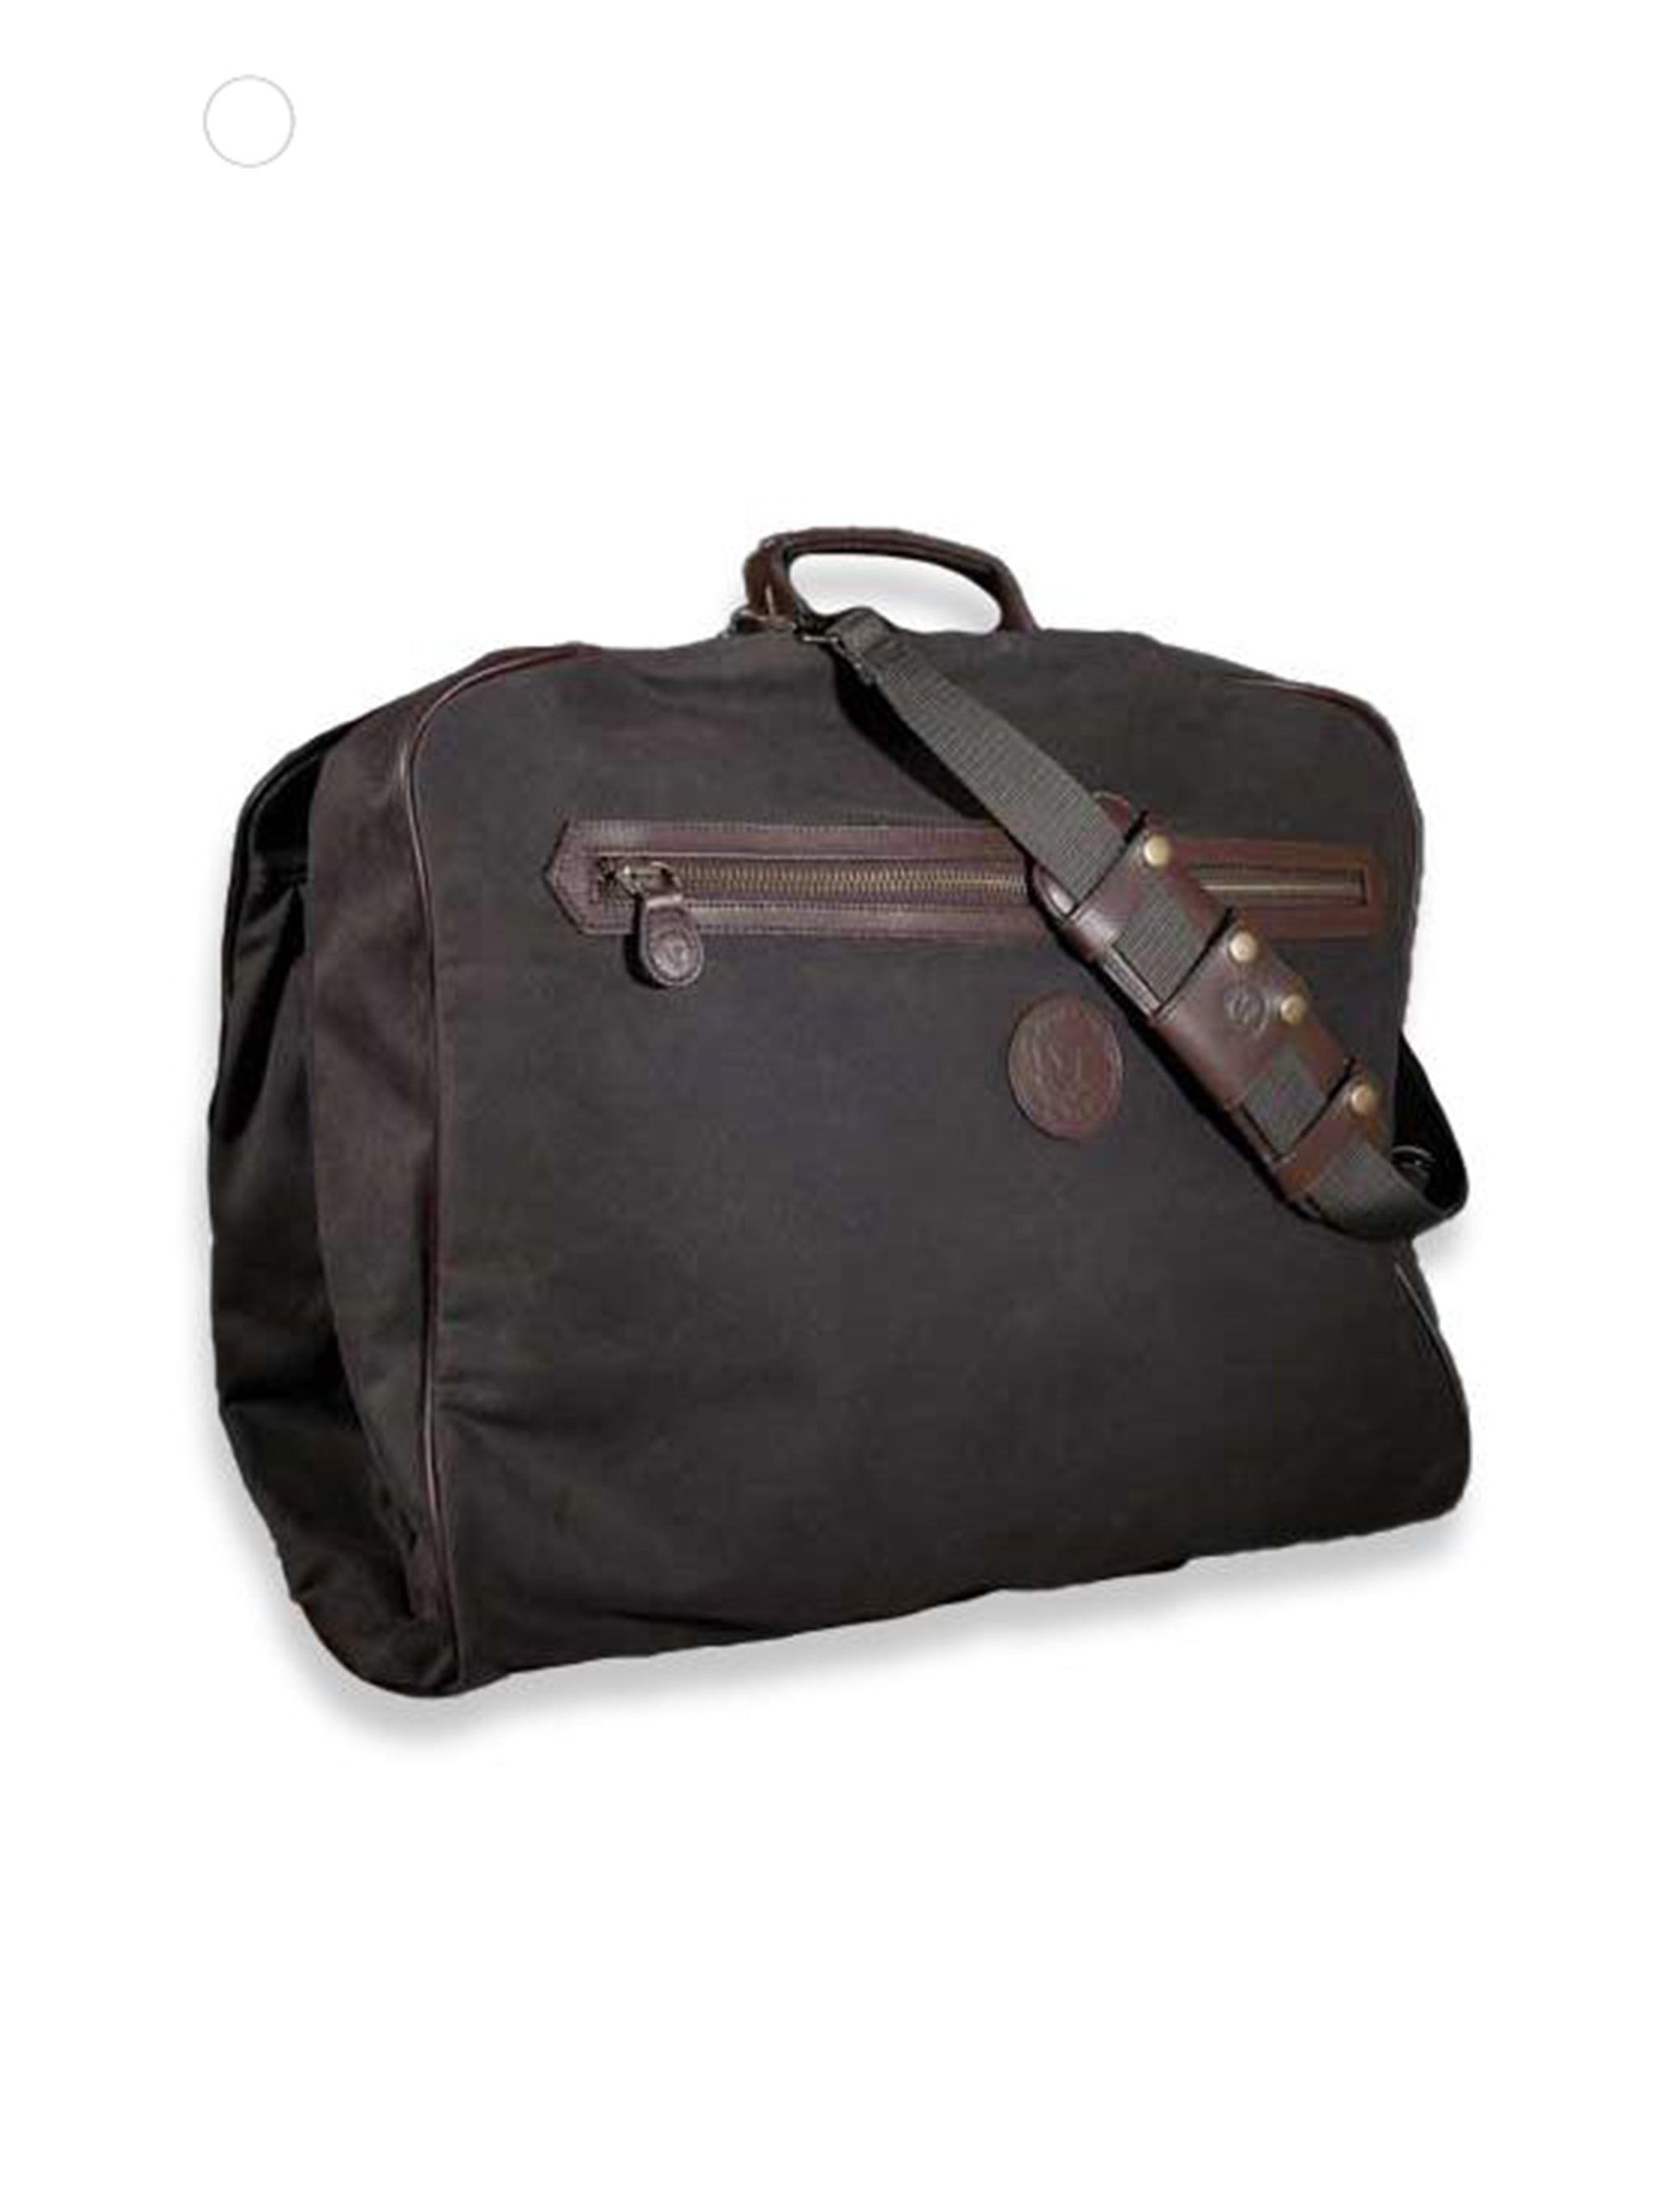 BULLCAPTAIN Men Messenger Bag Small Leather Shoulder Bag